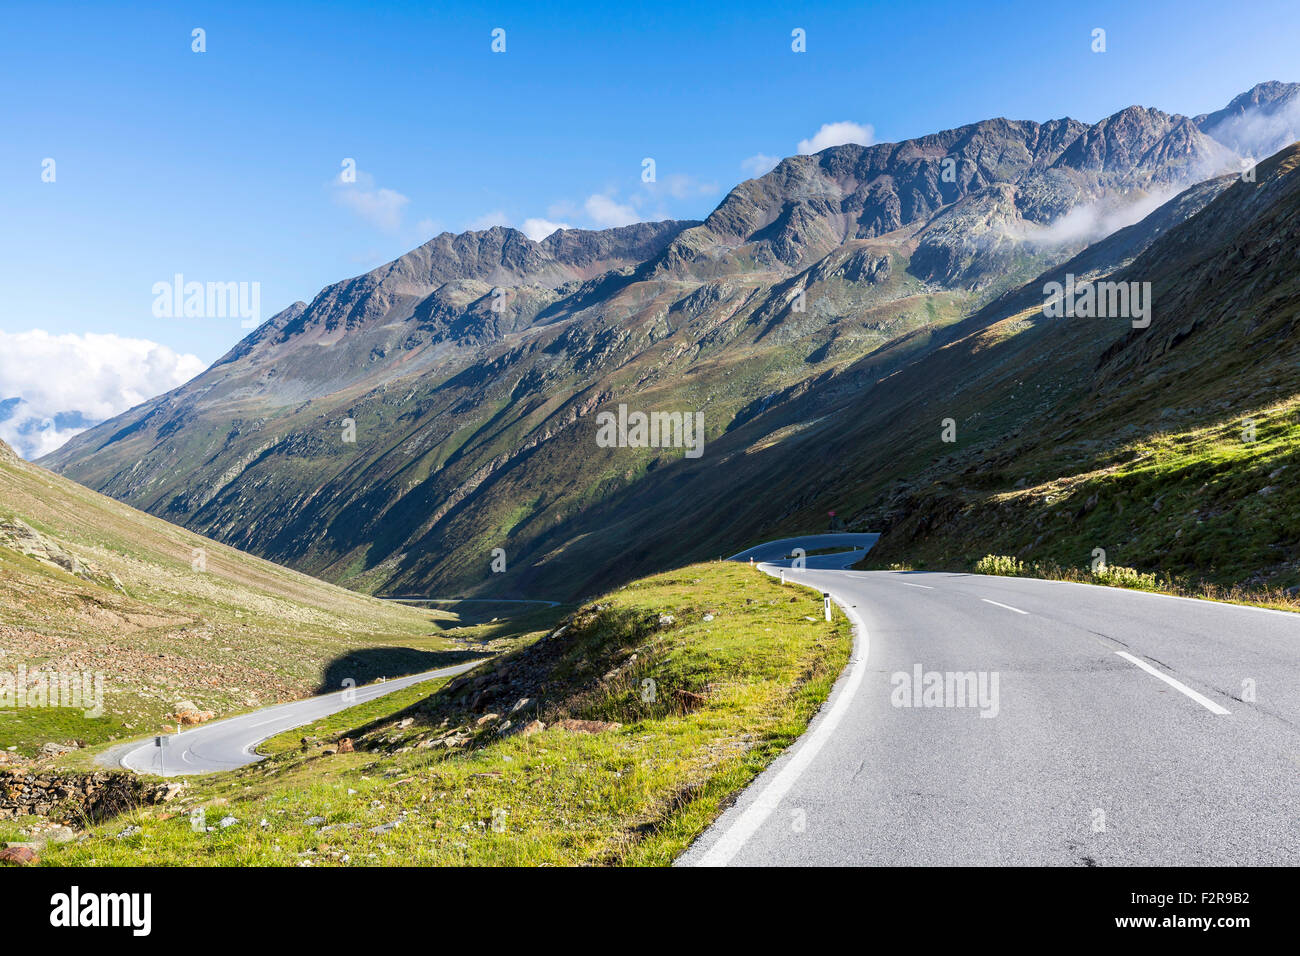 Mountain pass road, Timmelsjoch, Passo del rombo, Oetztal, Tirol, Austria Foto de stock